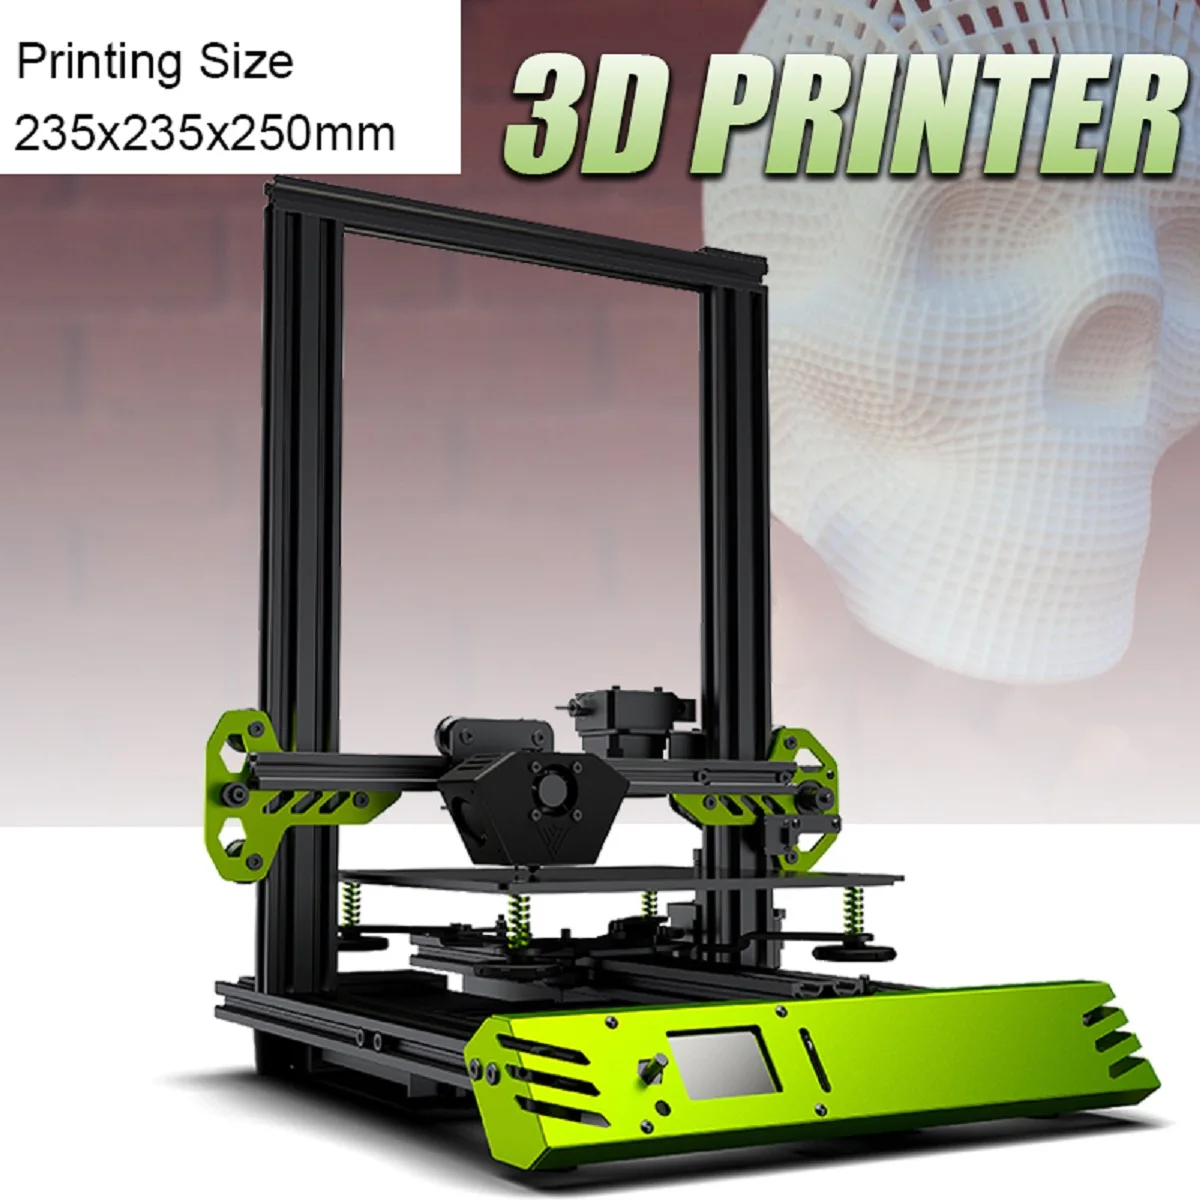 Odysseus/TEVO Tarantula Pro 3D Printer DIY Kits in 2020 Newest 3D Printer with 235x235x250mm Printing Size MKS GenL Mainboard